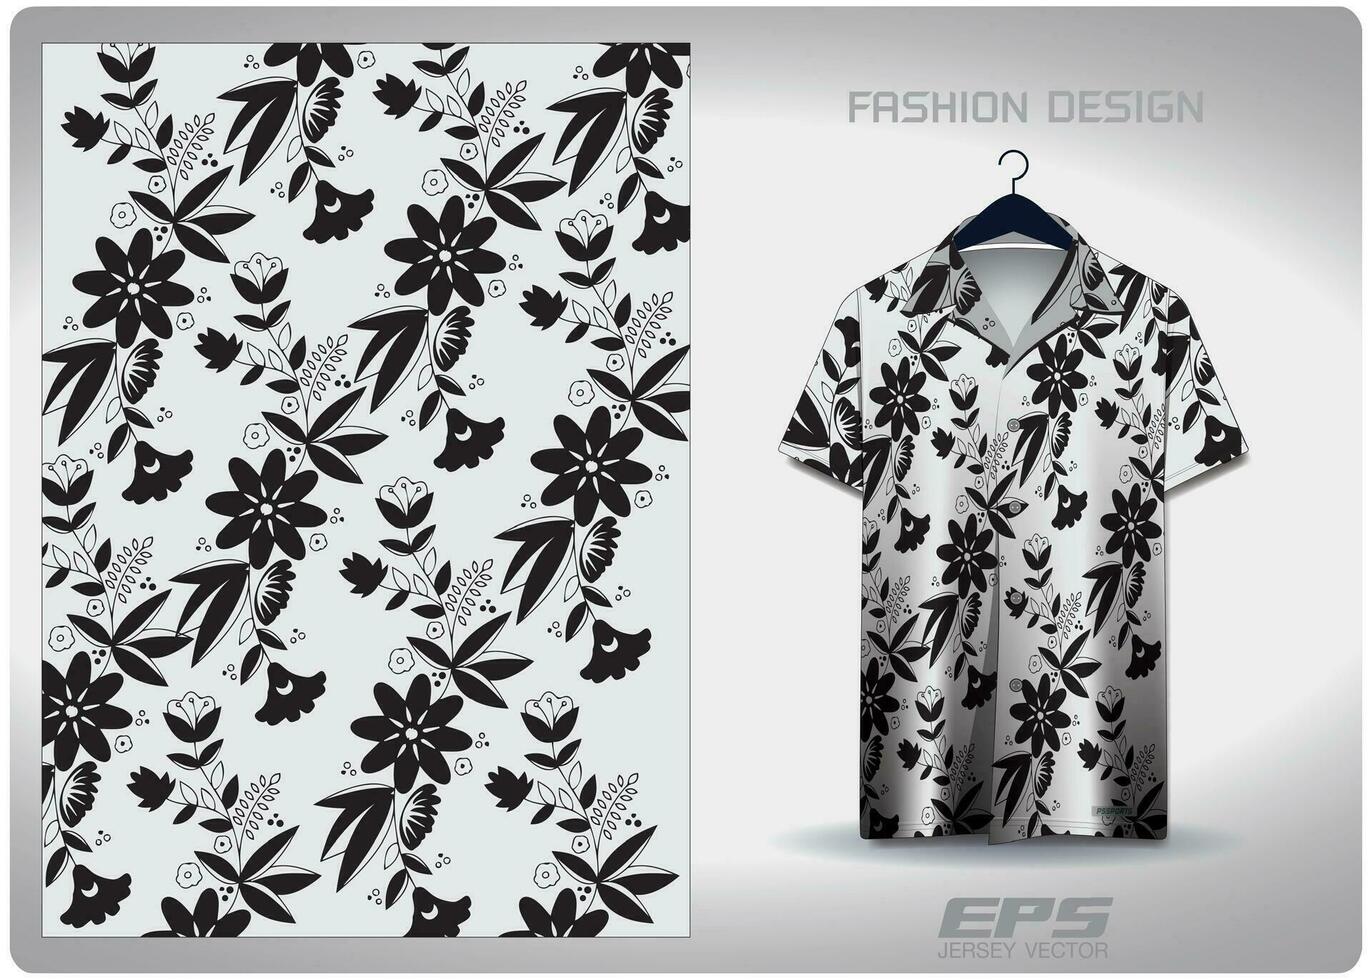 vektor hawaiian skjorta bakgrund bild.svart och vit blommor mönster design, illustration, textil- bakgrund för hawaiian skjorta, tröja hawaiian skjorta